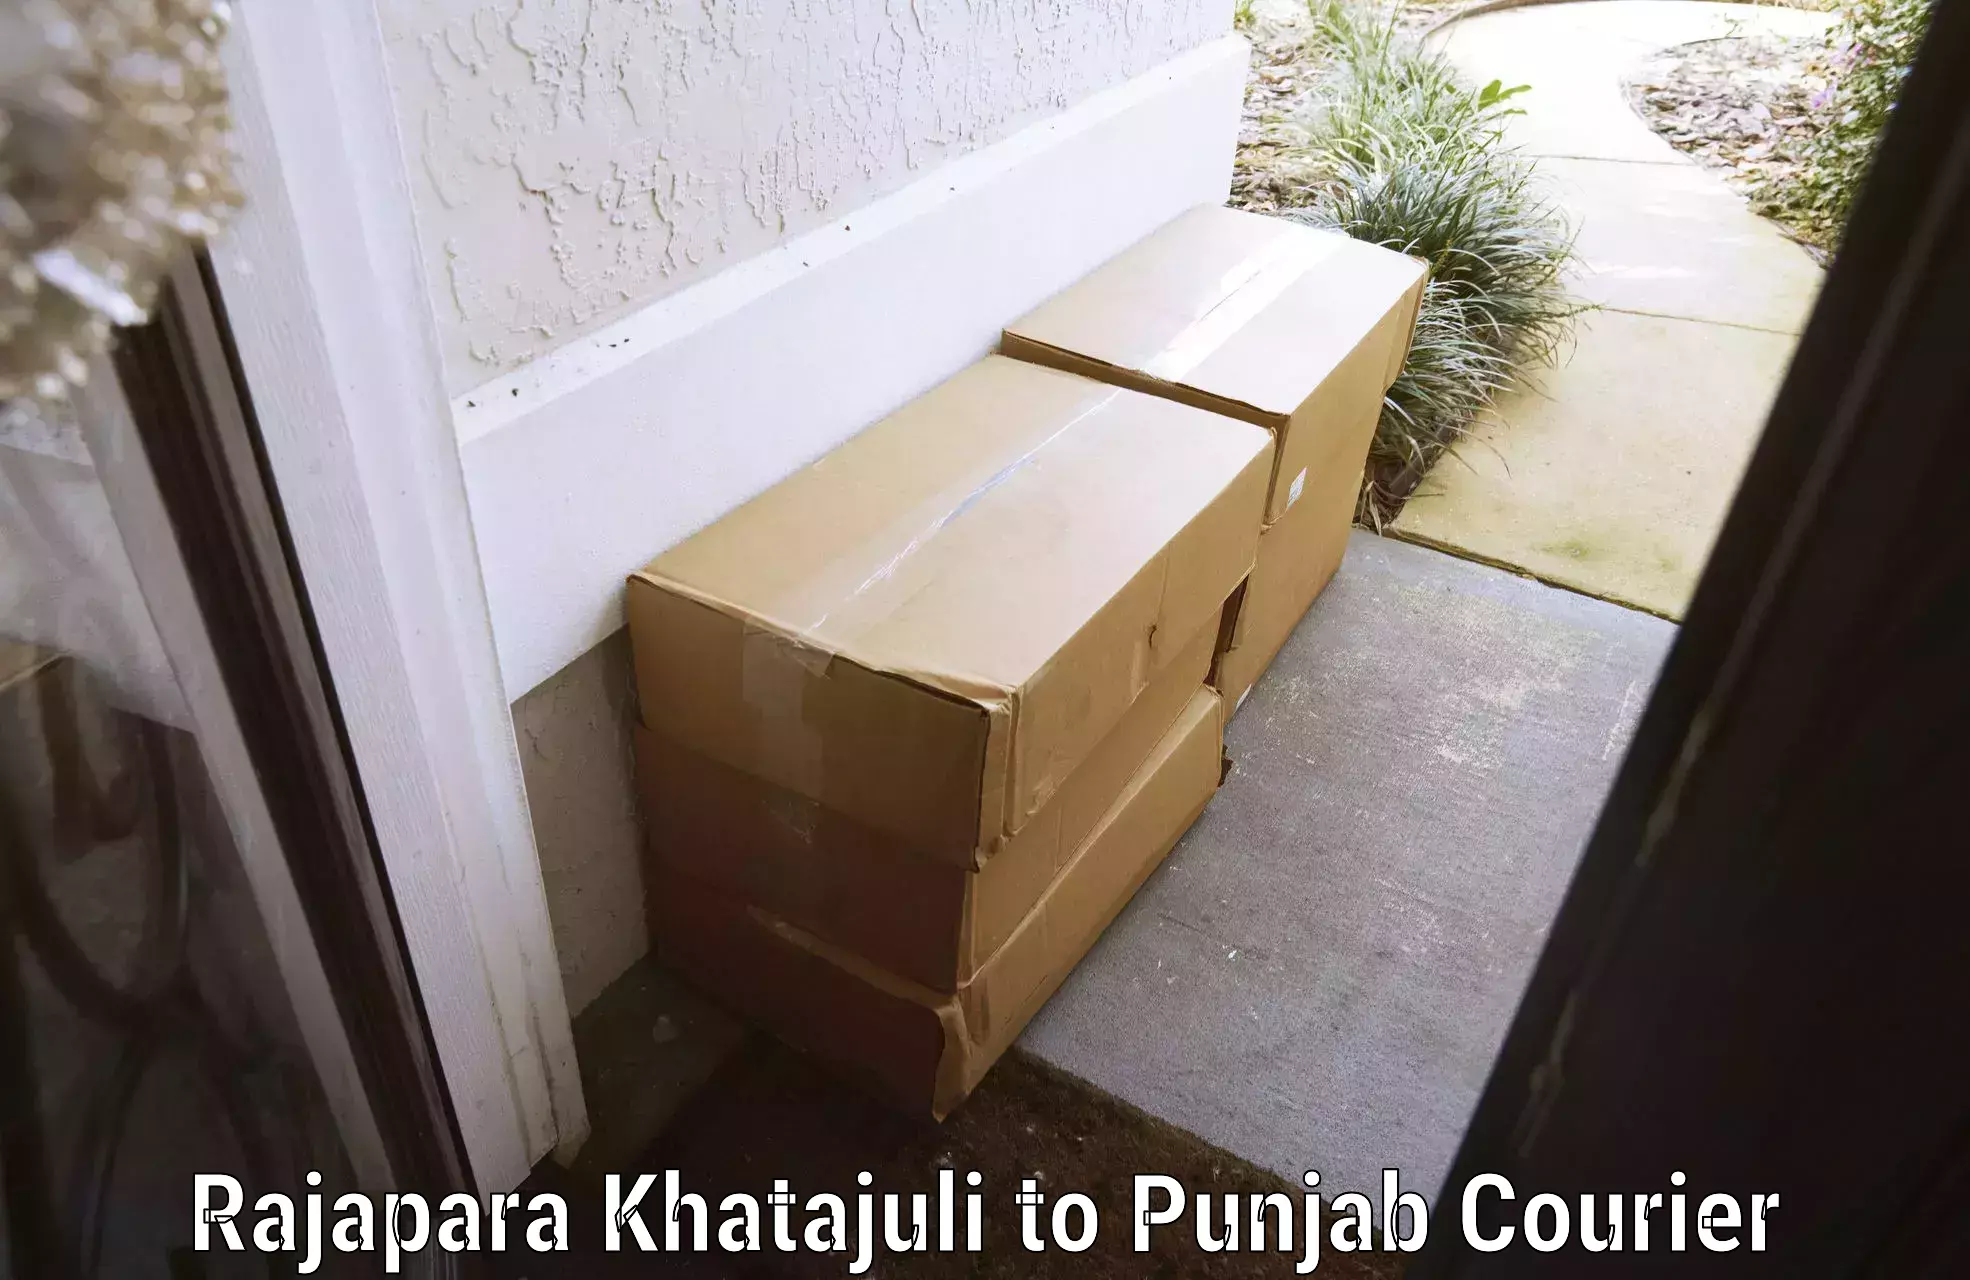 Digital baggage courier Rajapara Khatajuli to Firozpur